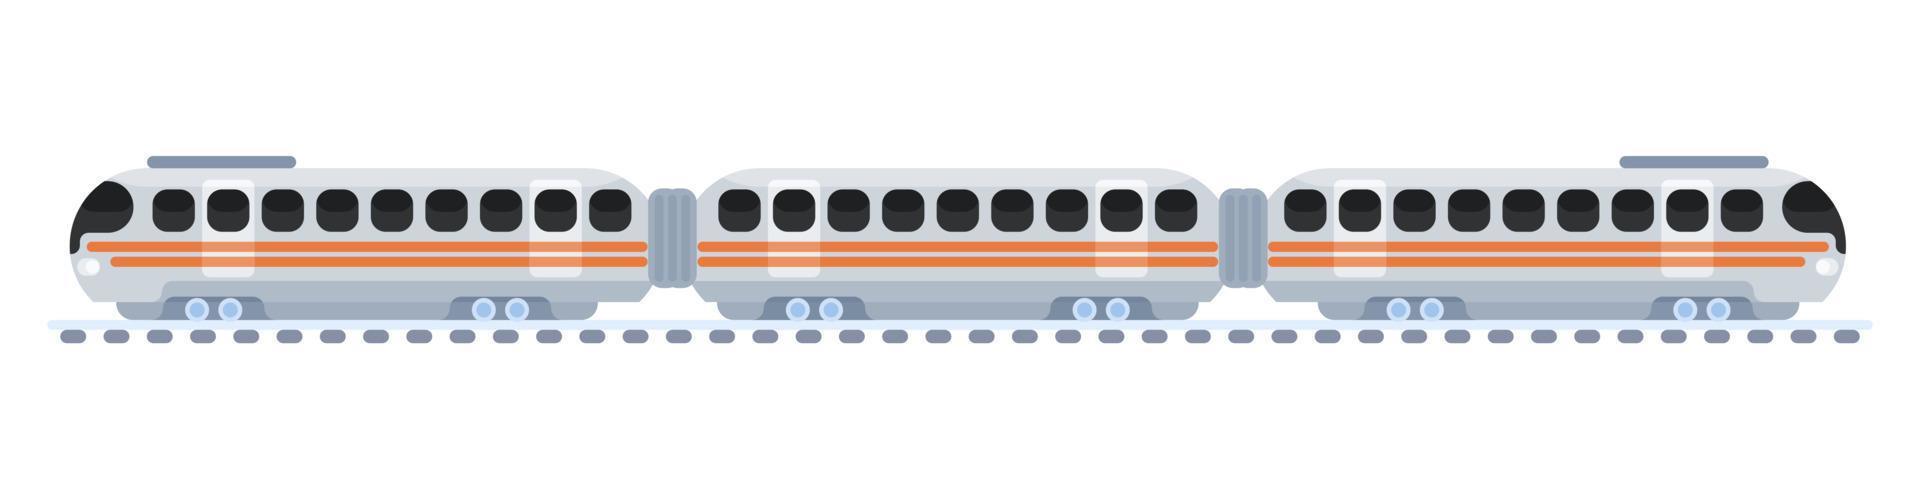 trein op rails elektrische nieuwe tekening. vector plat